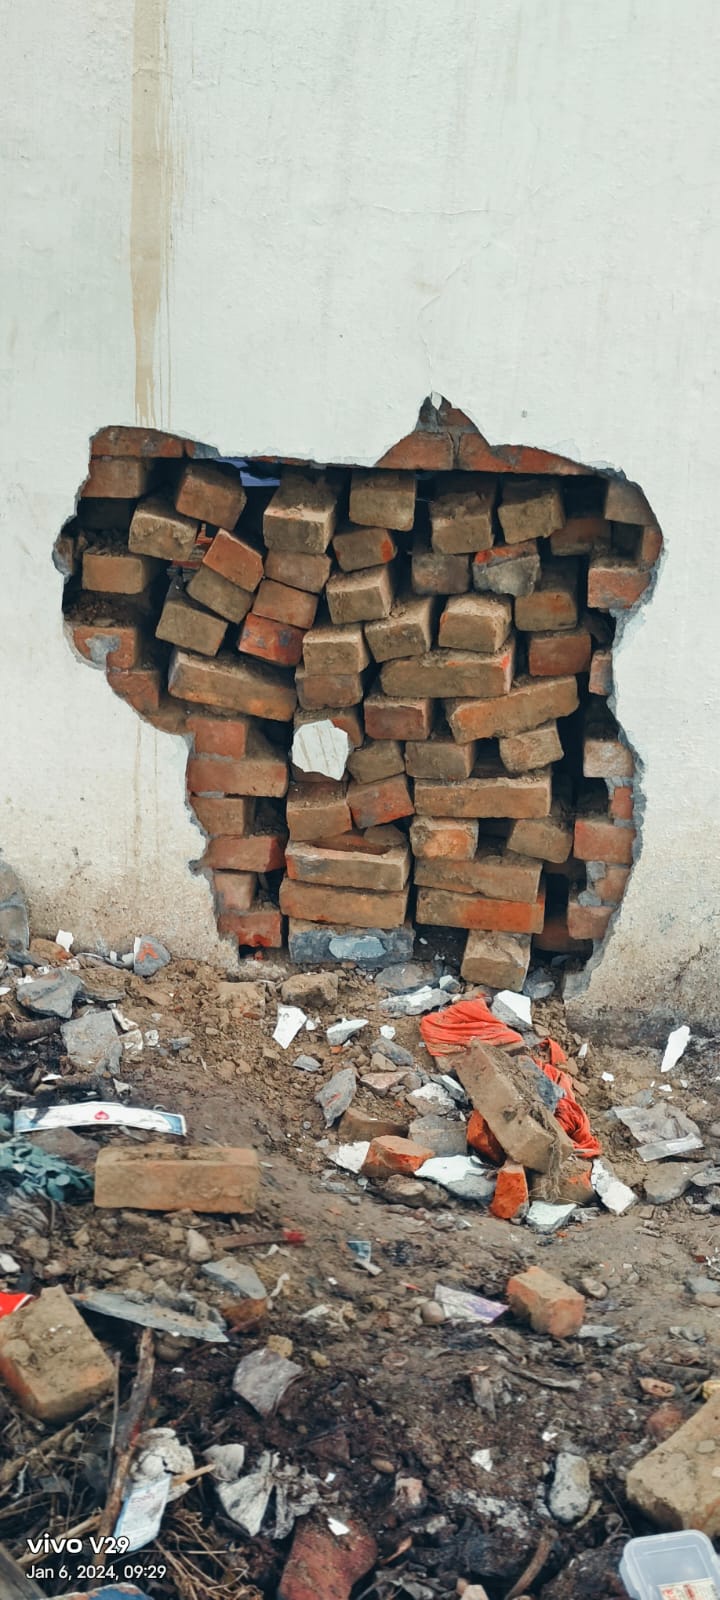 सर्राफा व्यवसाई के घर चोरों ने सेंध लगाकर लाखों रुपए के जेवरात किए साफ